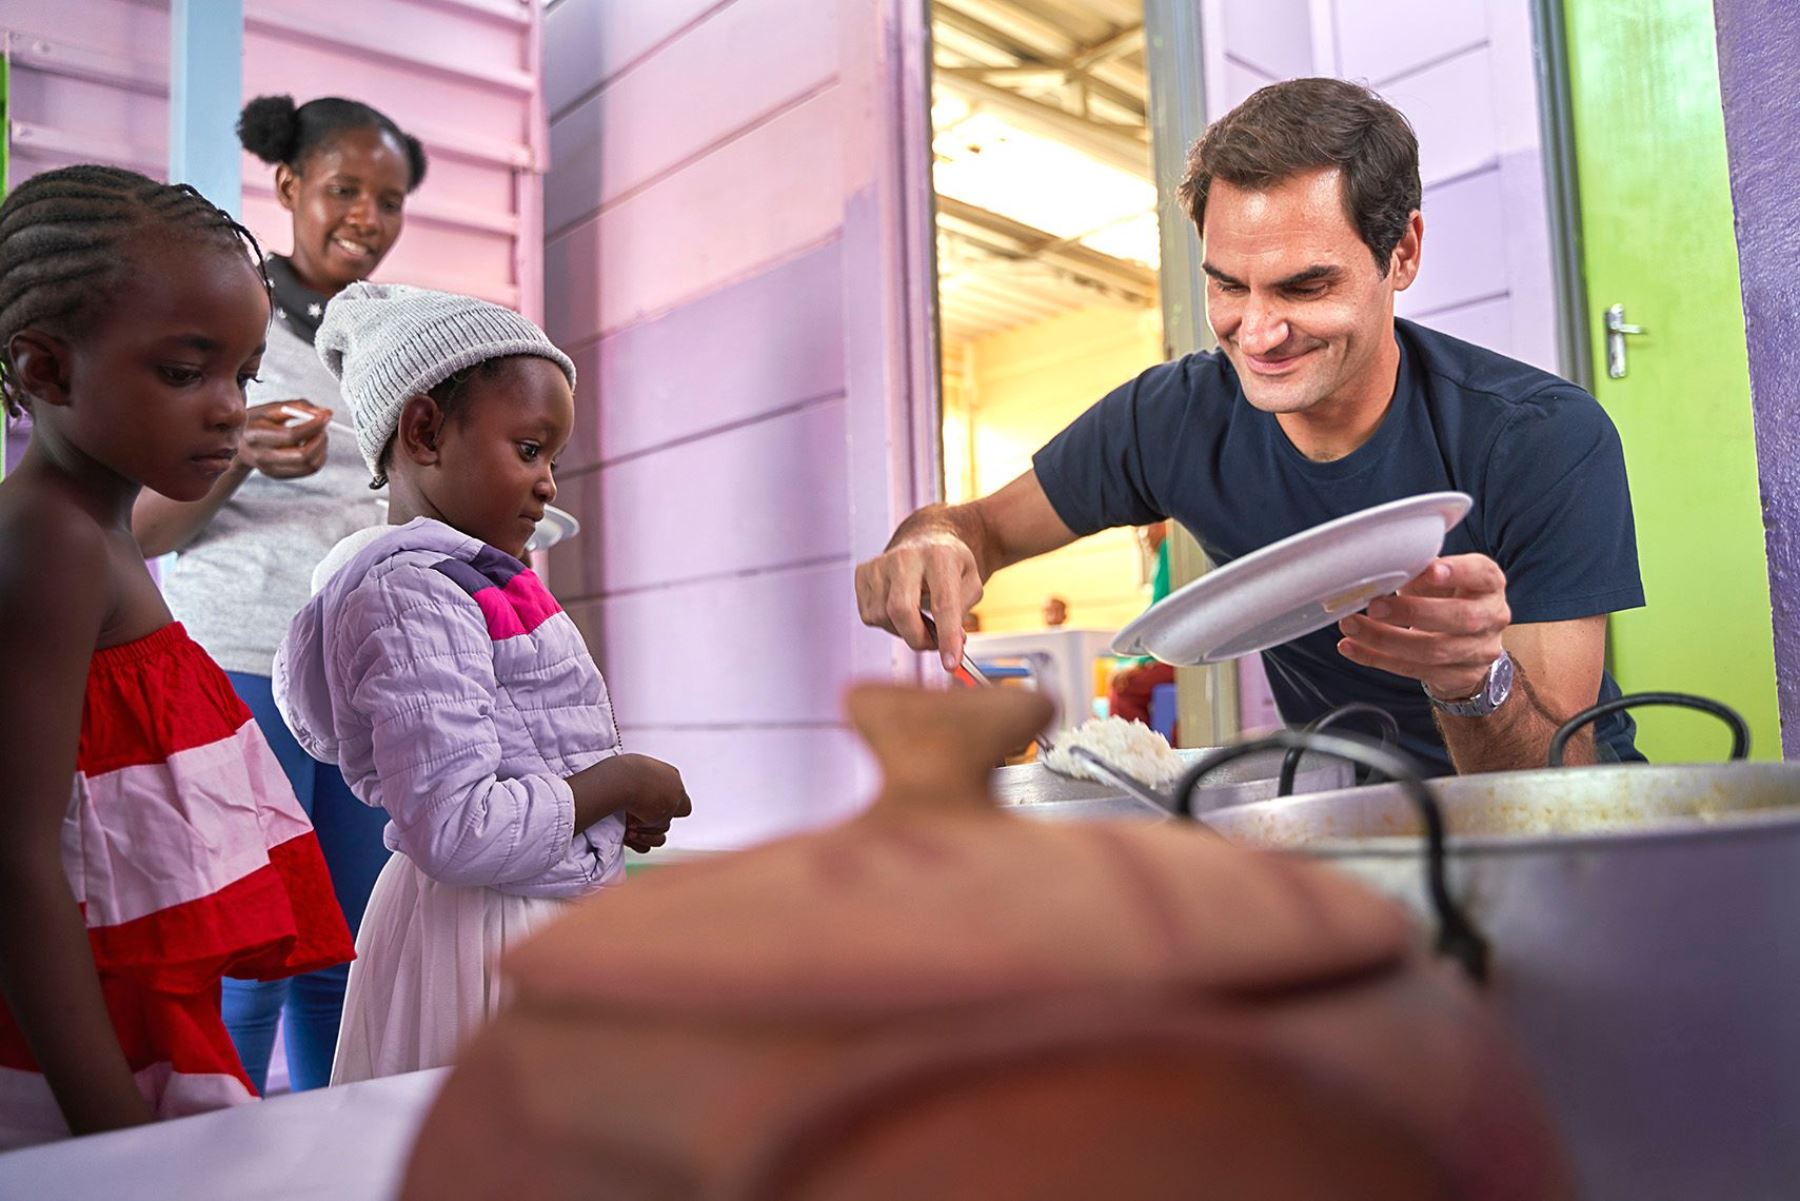 La Fundación Roger Federer ha informado de la donación de un millón de dólares para proporcionar alimentos a 64.000 niños y a sus familias